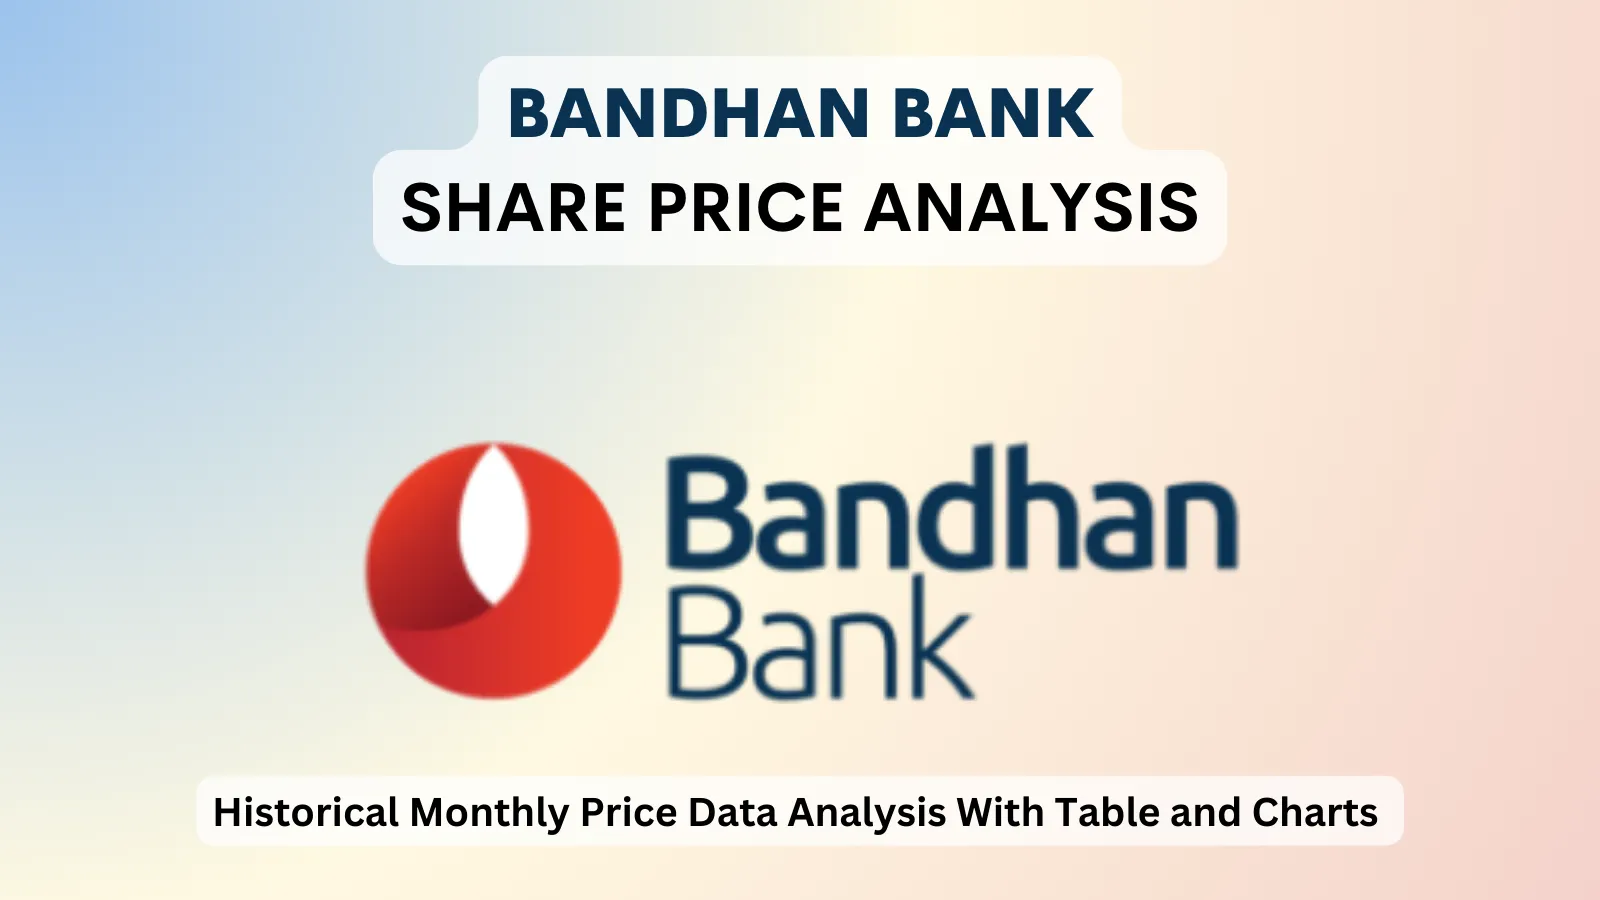 Bandhan Bank share price analysis